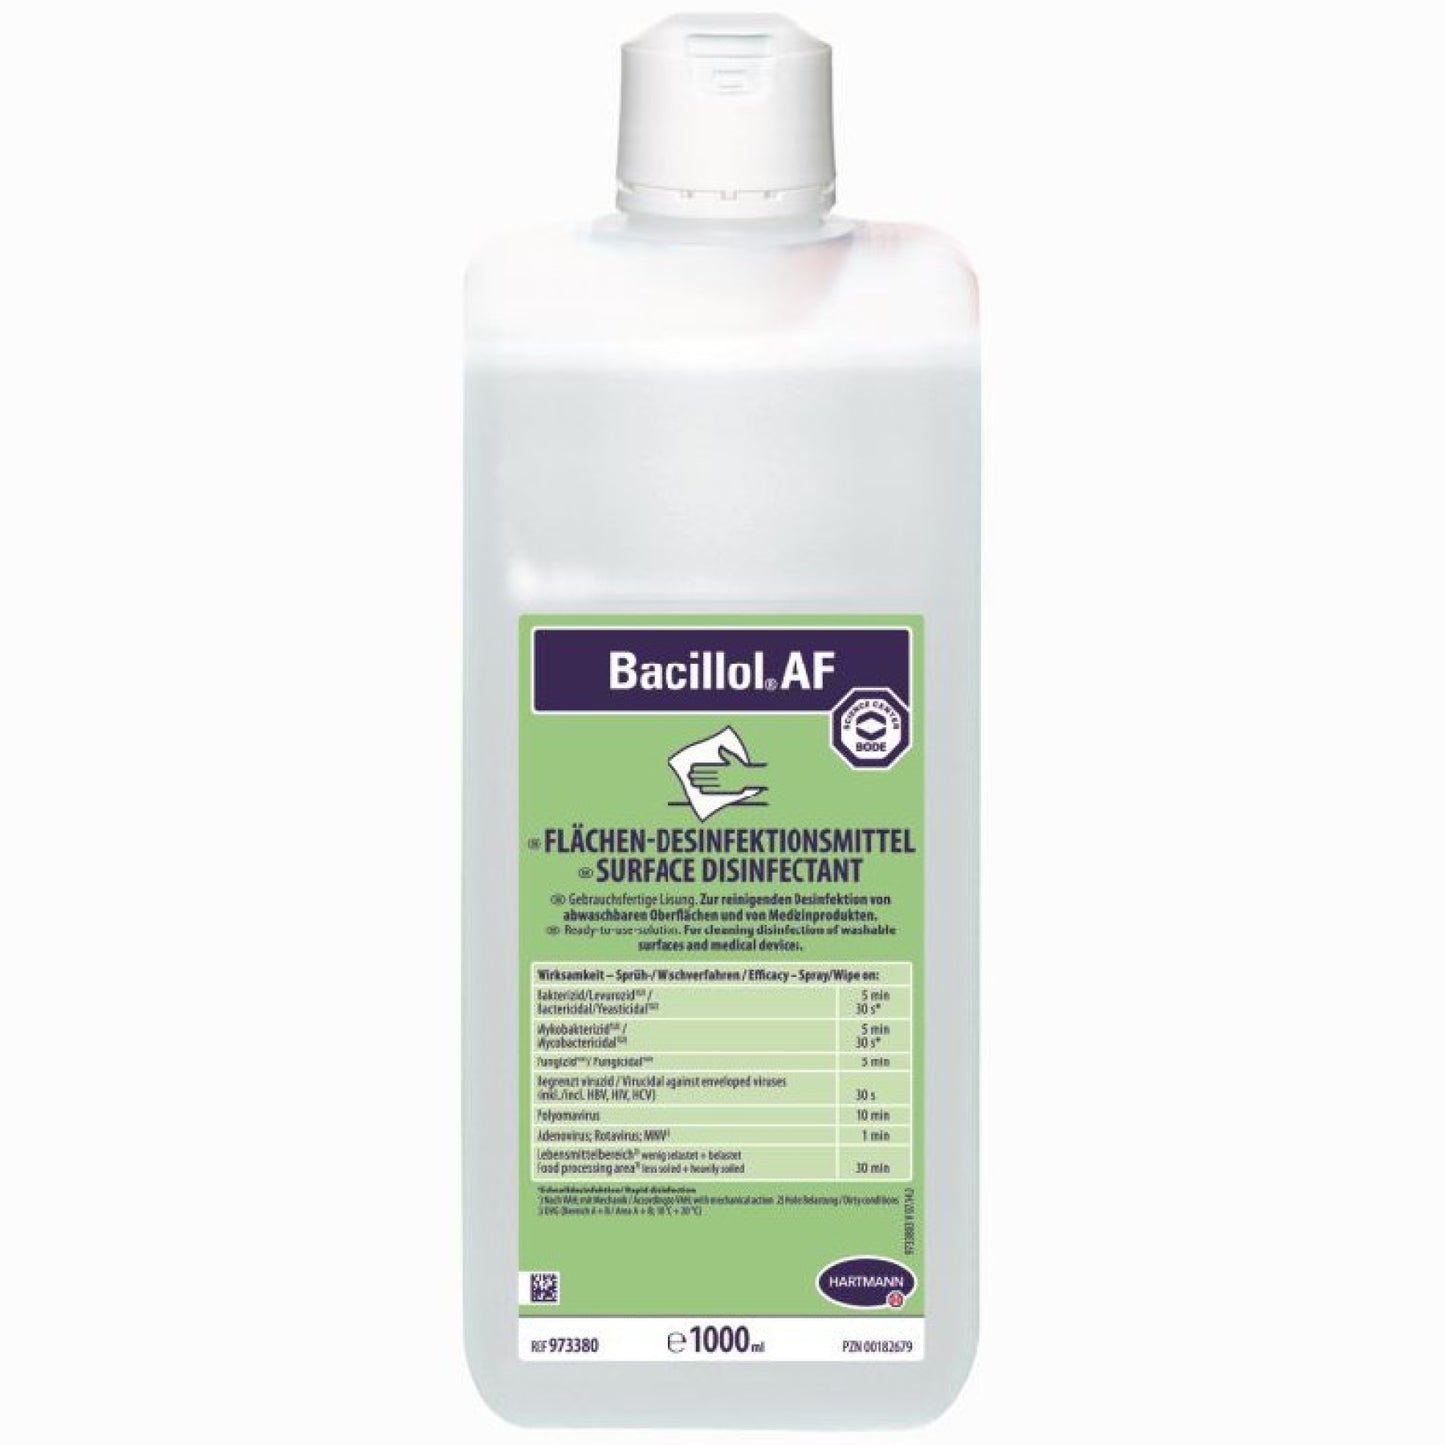 Bacillol AF - Flächendesinfektion, alkoholisches Schnelldesinfektionsmittel